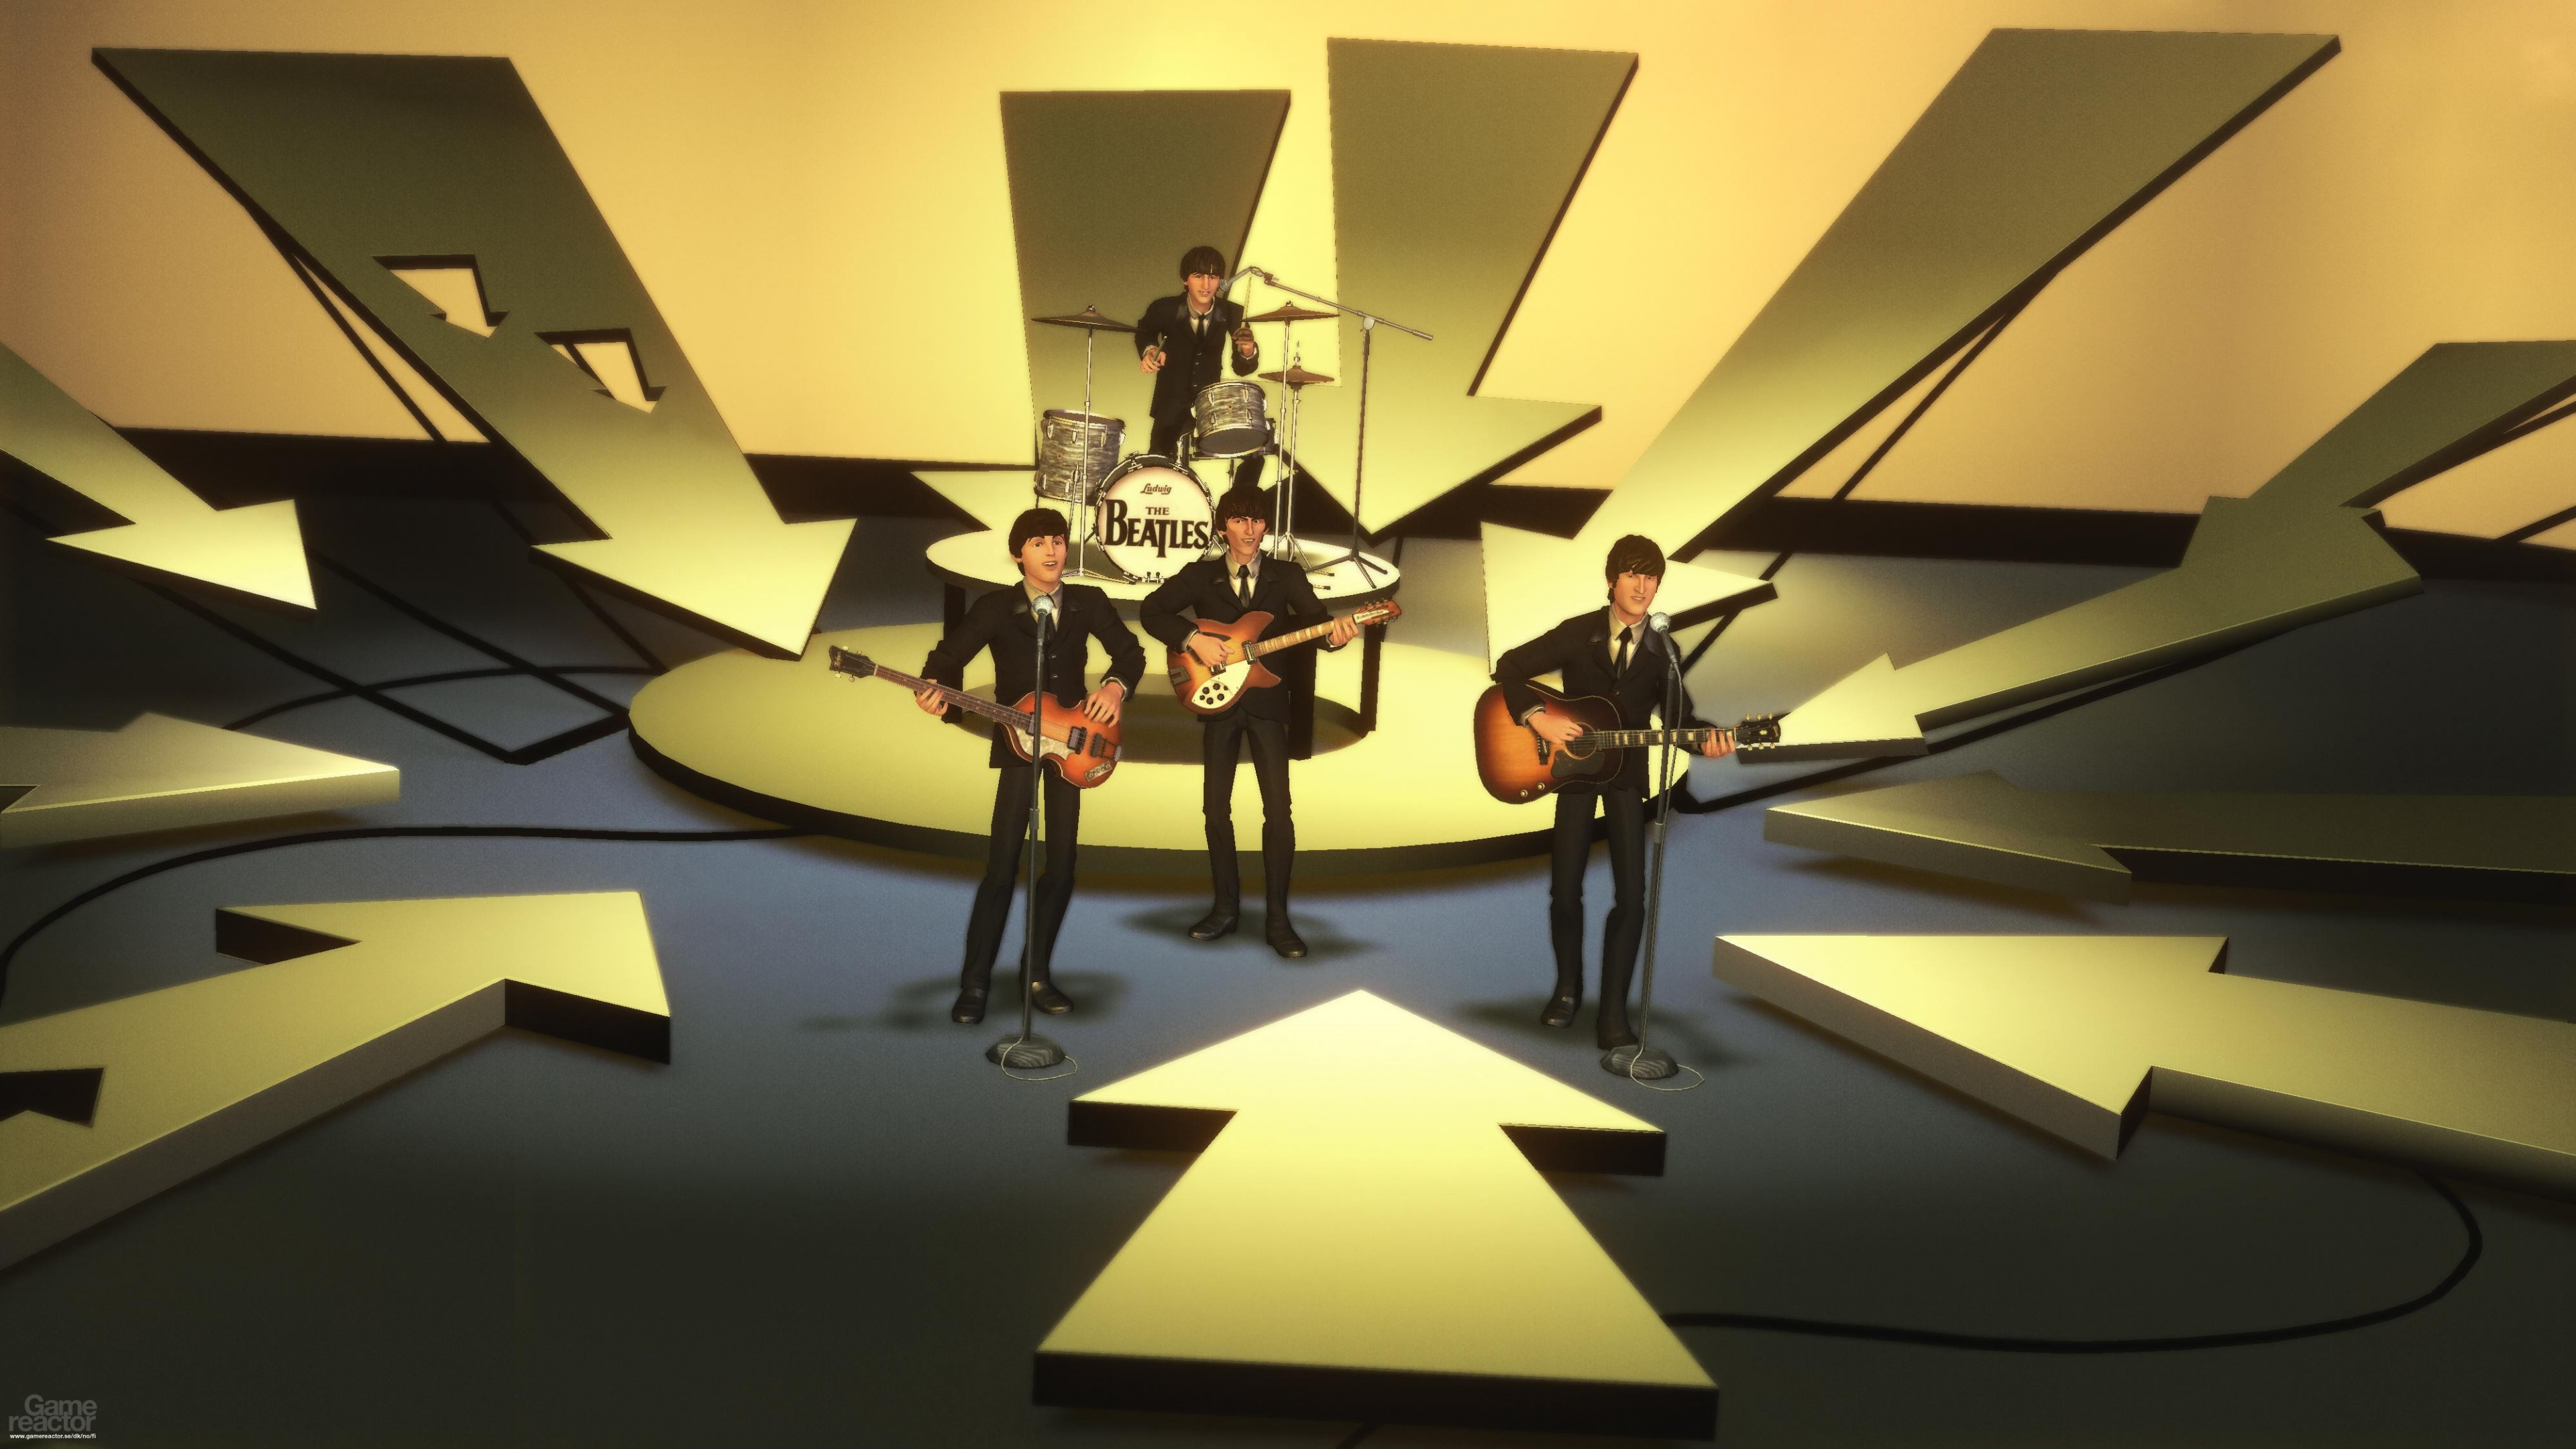 Обои Рок-Группы Битлз, The Beatles, дизайн интерьера, арт, интерьер в разрешении 3840x2160